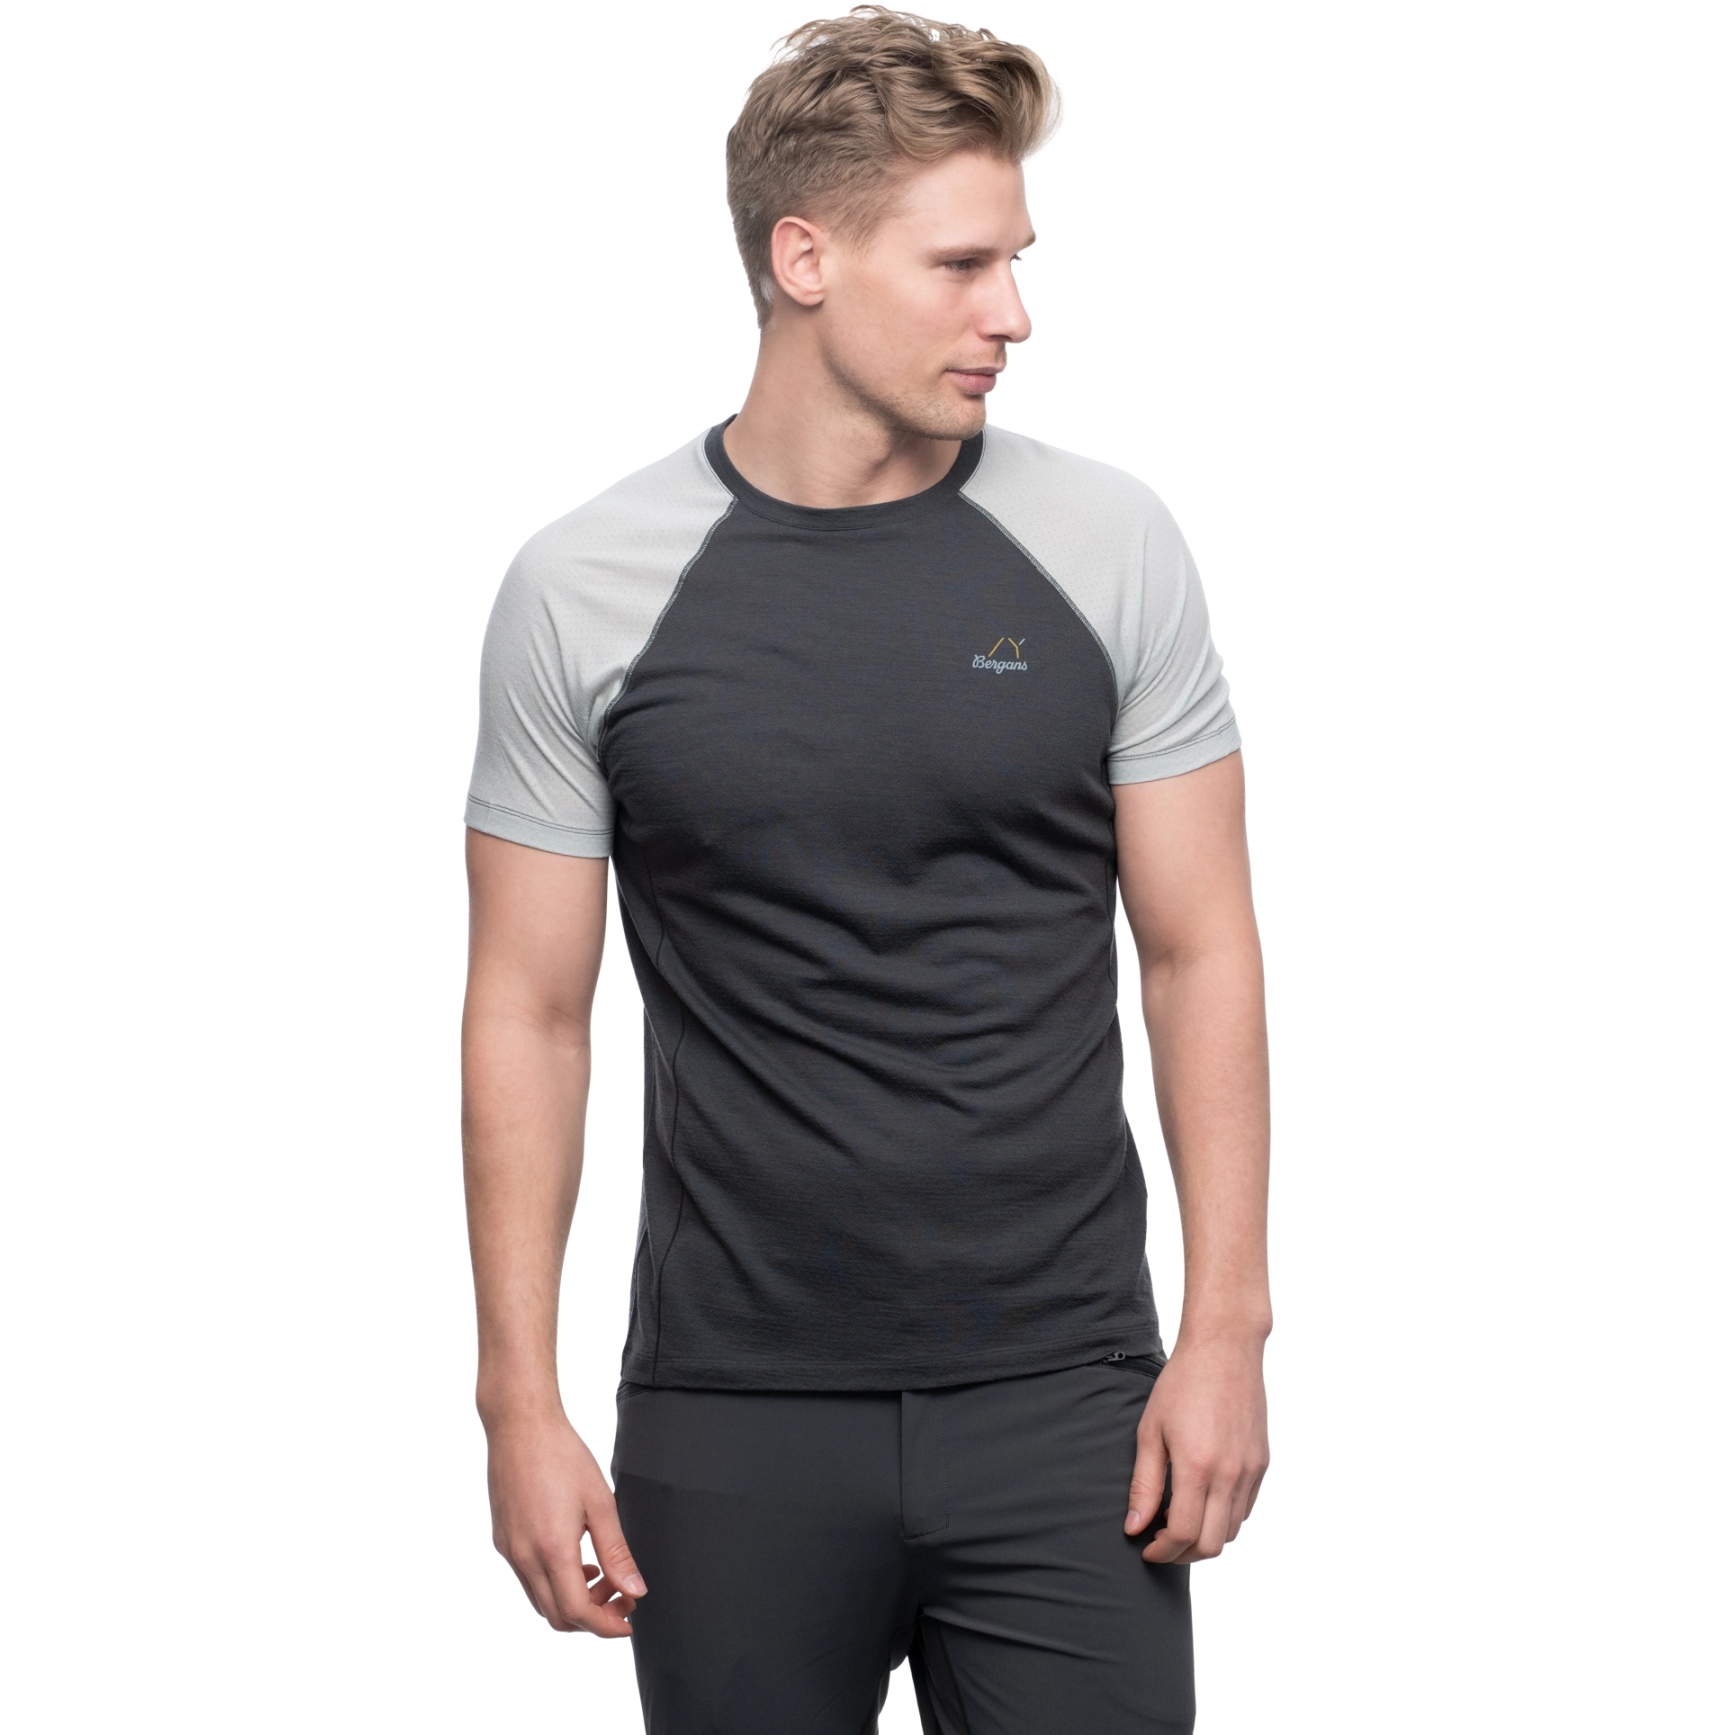 Produktbild von Bergans Y LightLine Merino T-Shirt Herren - dark shadow grey/pearl grey